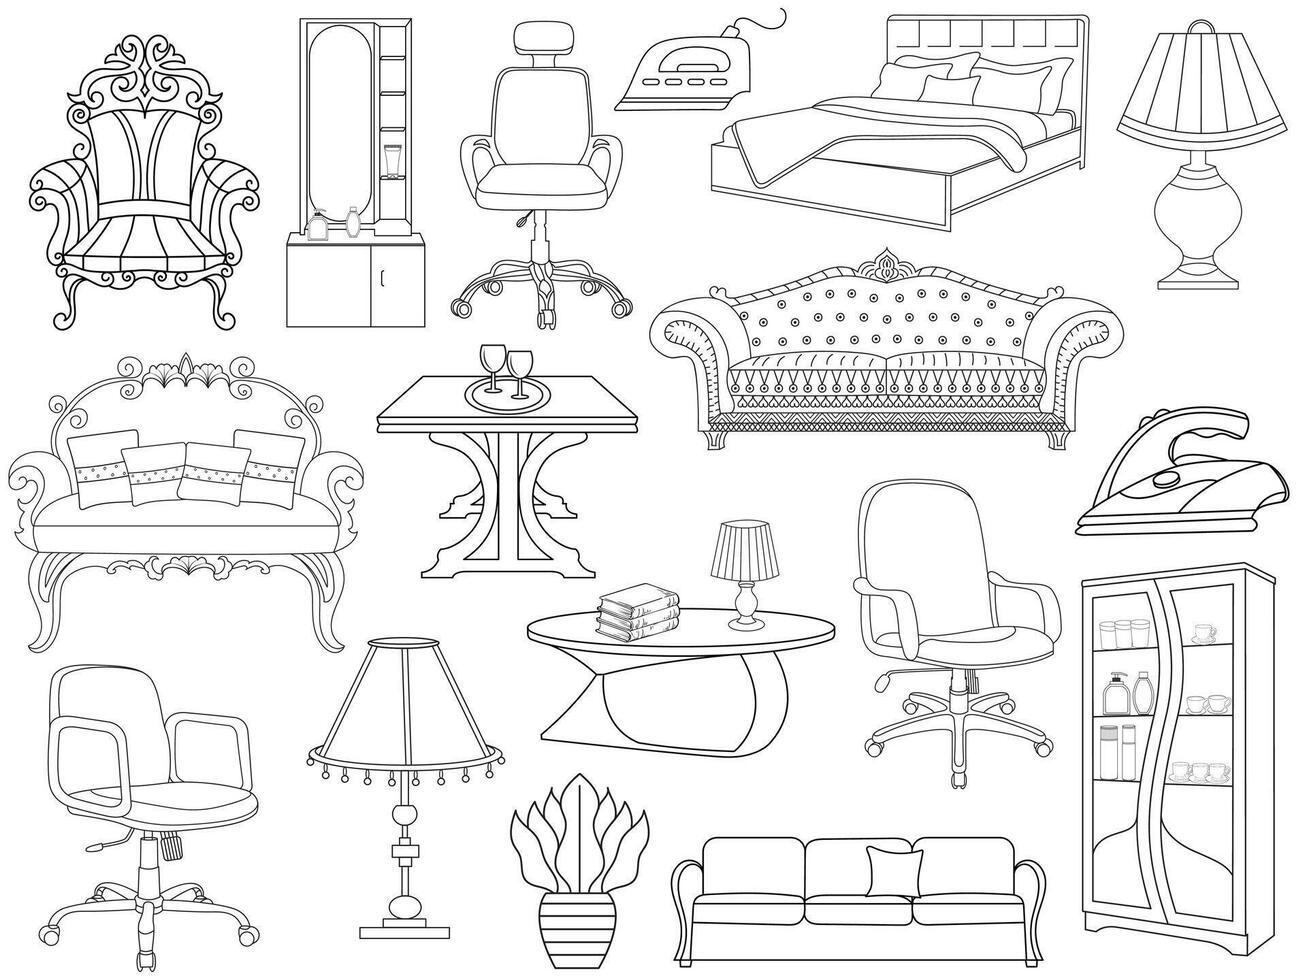 samling av elegant modern möbel och Hem interiör dekorationer av trendig. kök, sovrum, soffa tabell, bokhylla garderob, stol, madrass, lampor, möbel vektor illustration uppsättning.